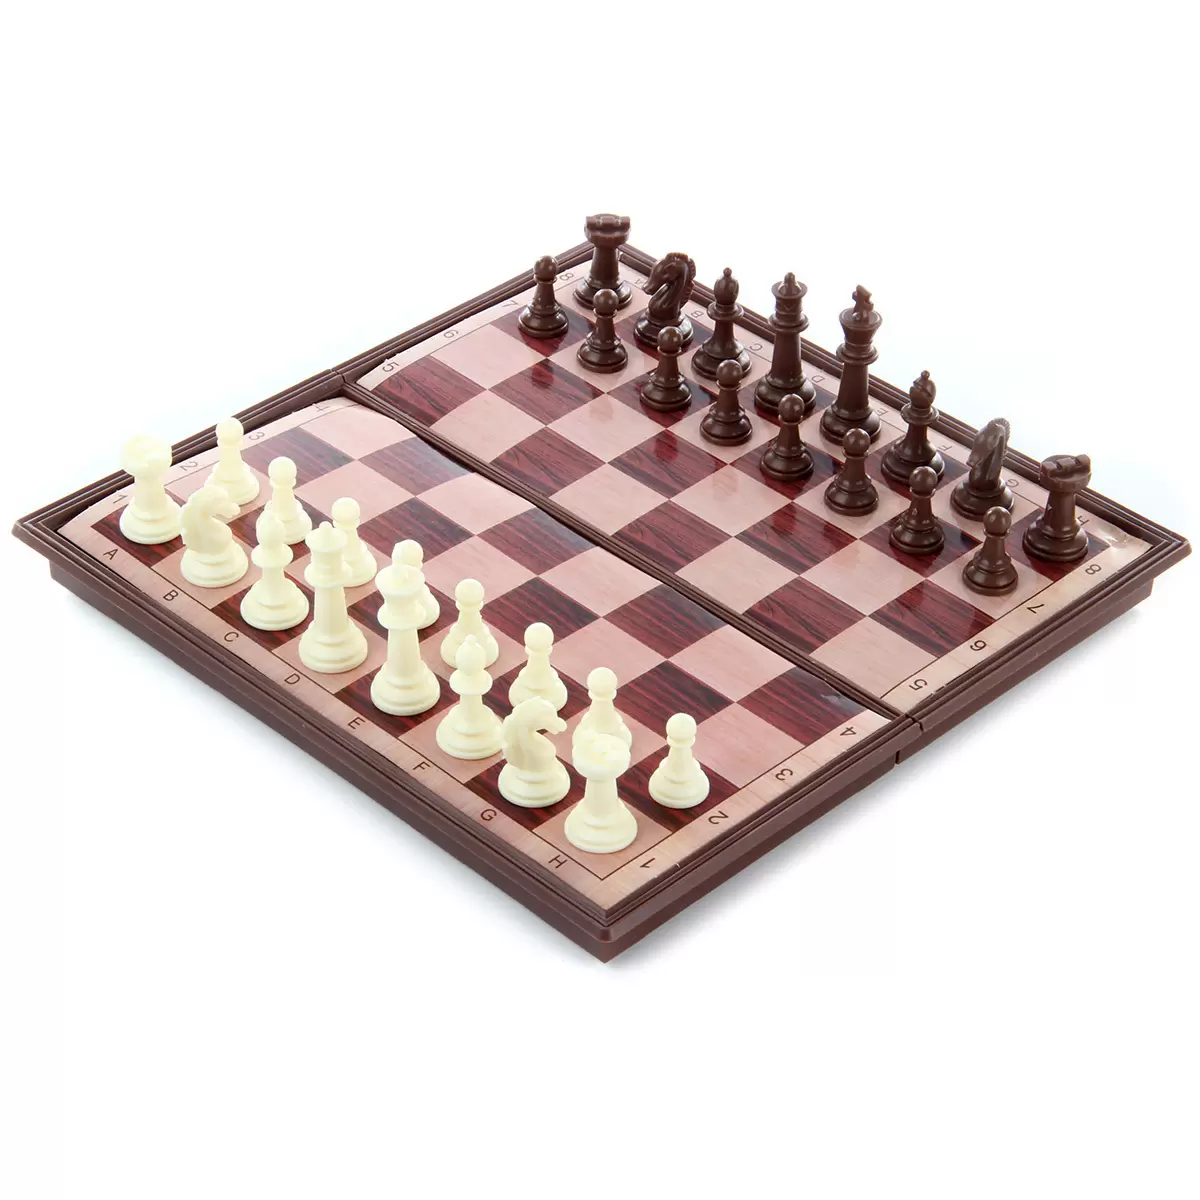 Игра настольная Десятое королевство "Шахматы и шашки" 03879 (дерев.короб.,поле 29*29см)